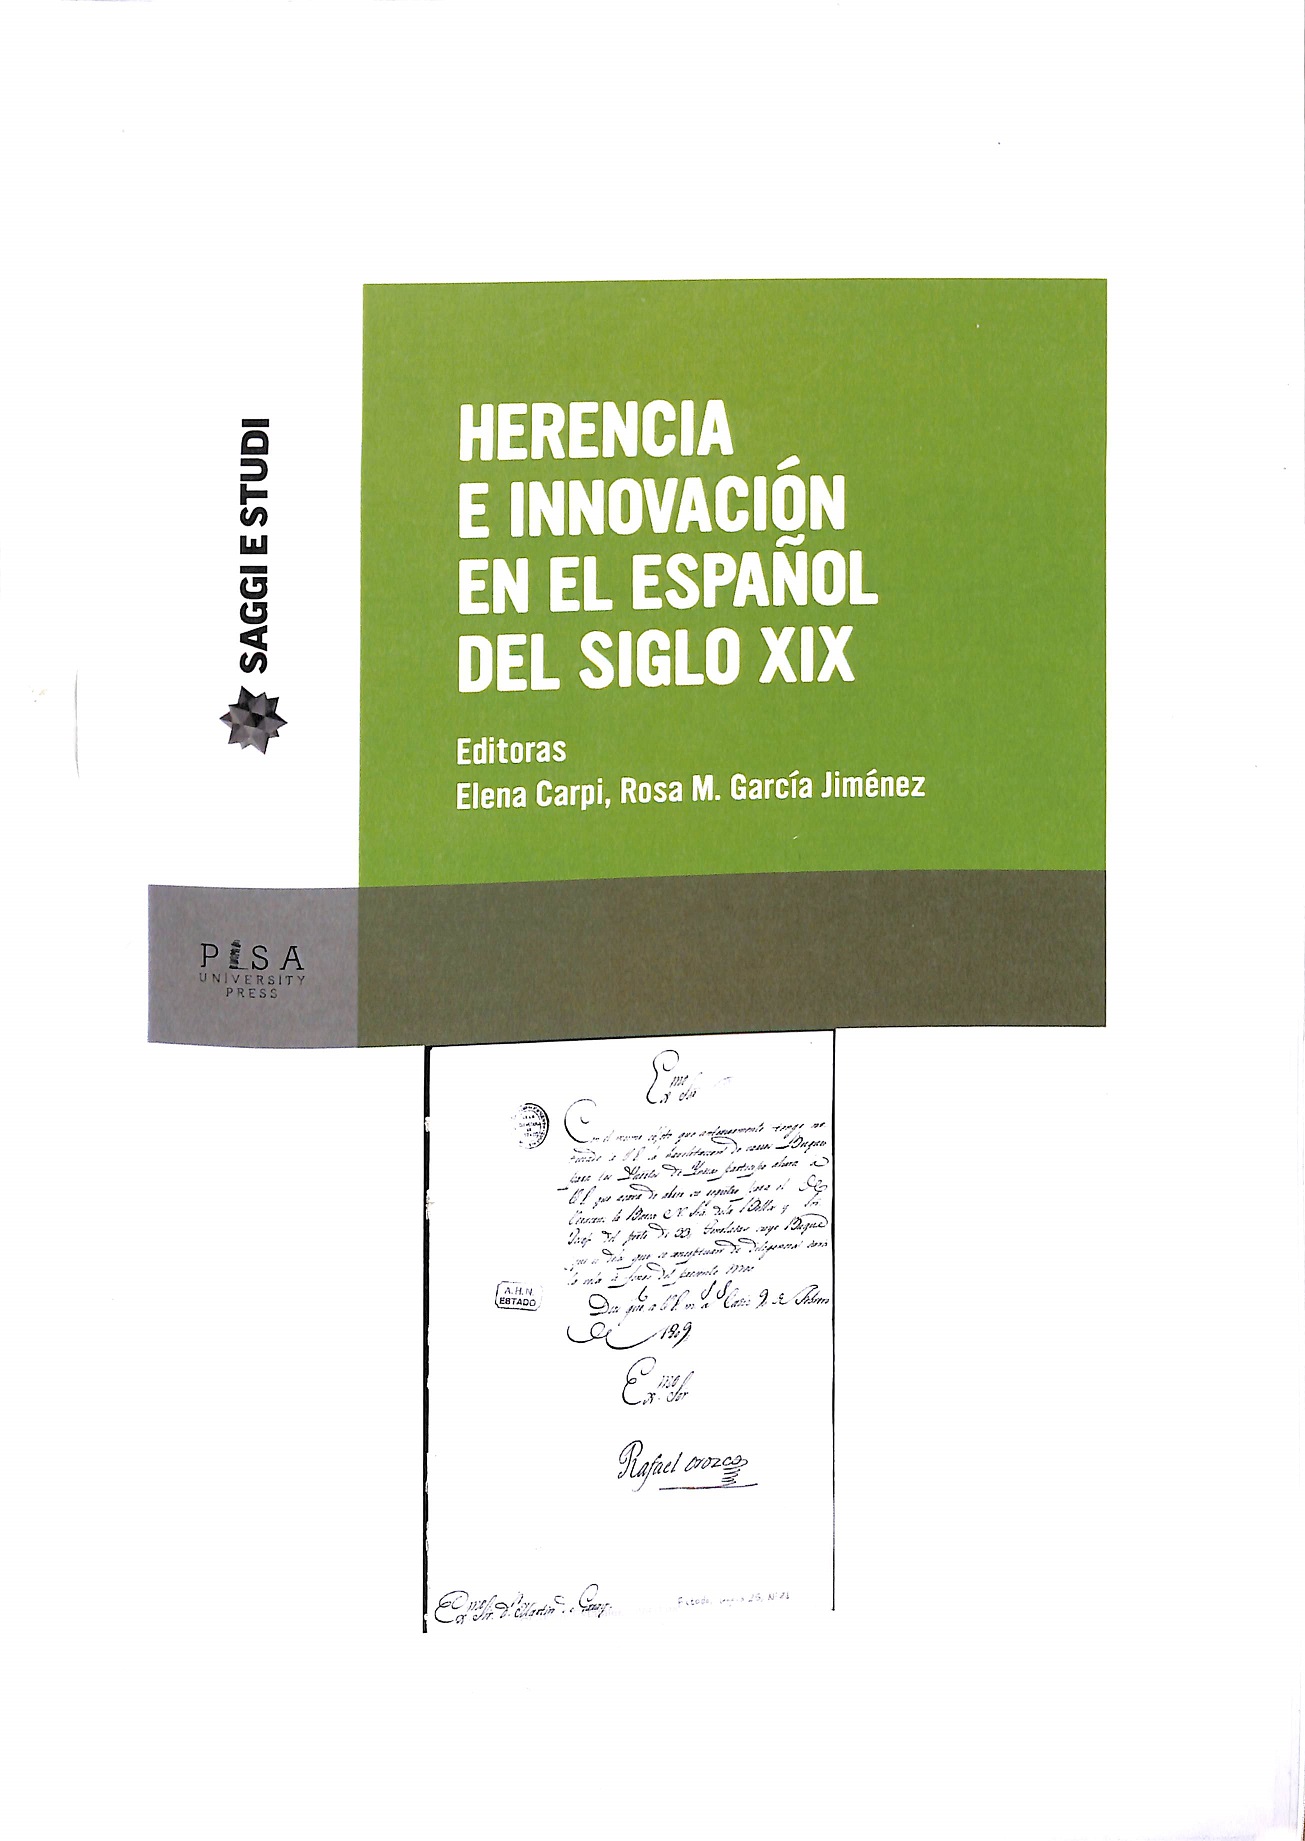 Imagen de portada del libro Herencia e innovación en el español del siglo XIX